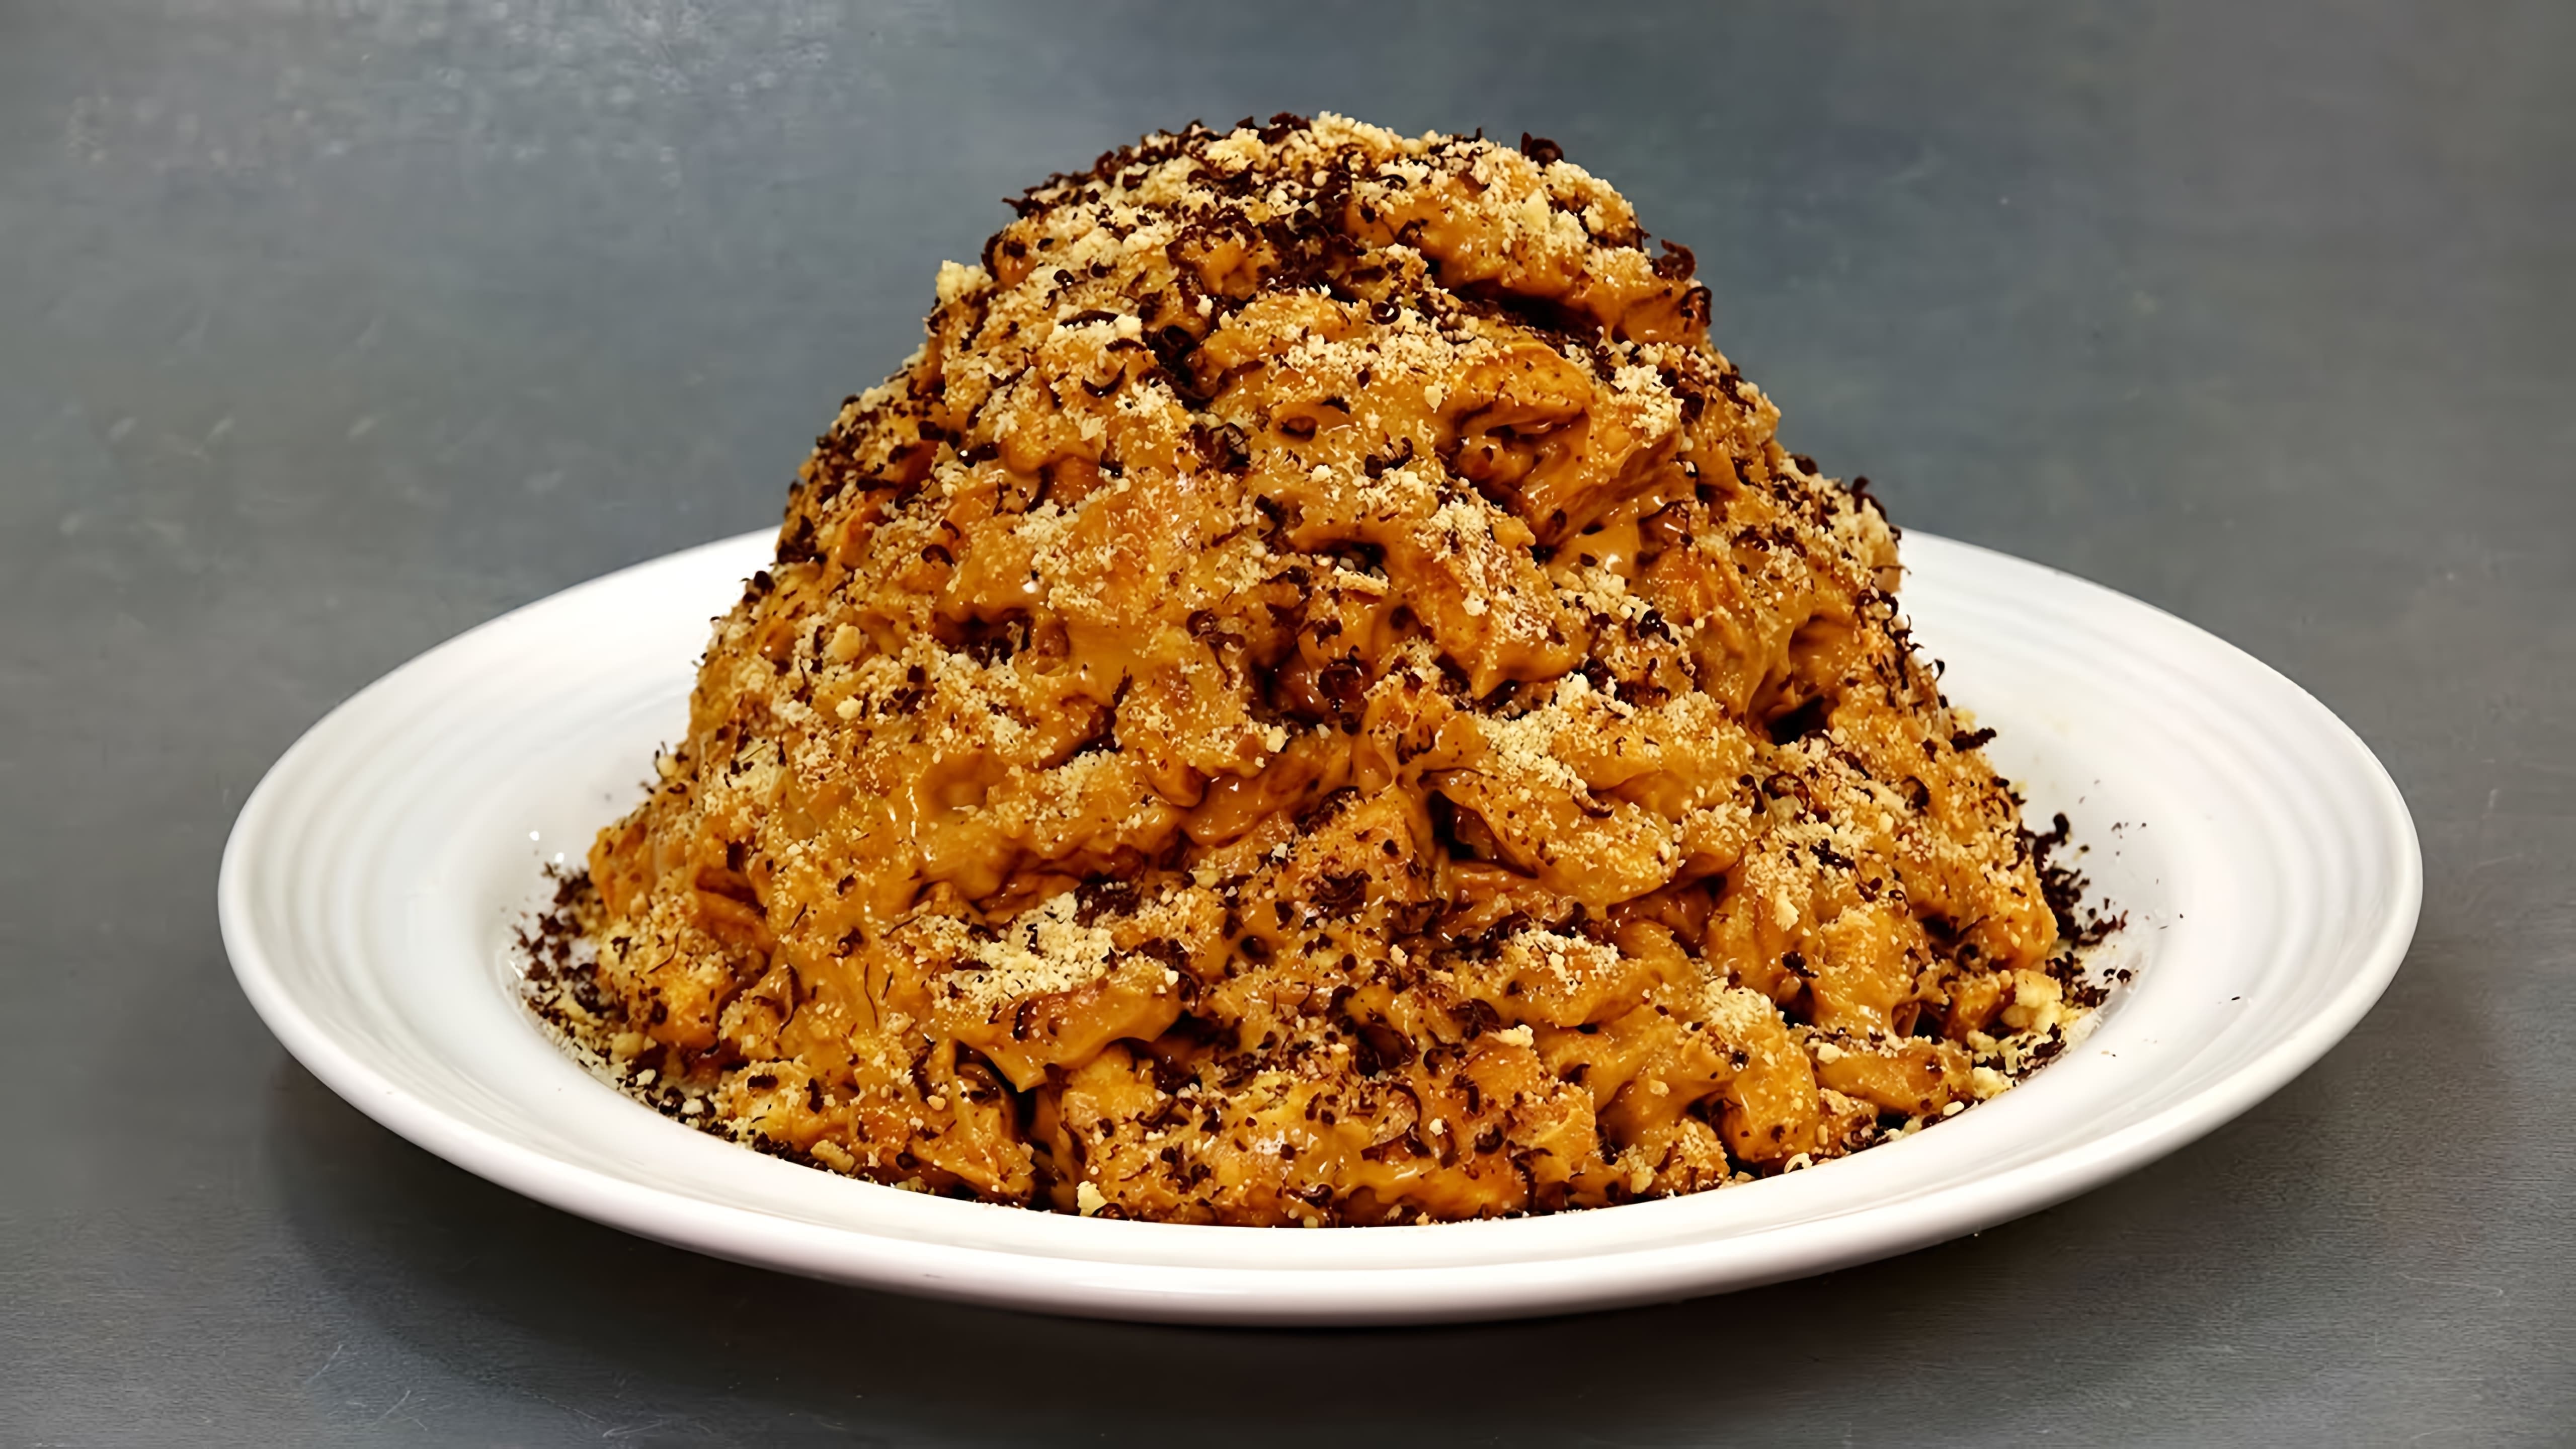 В этом видео демонстрируется рецепт приготовления торта "Муравейник" без выпечки